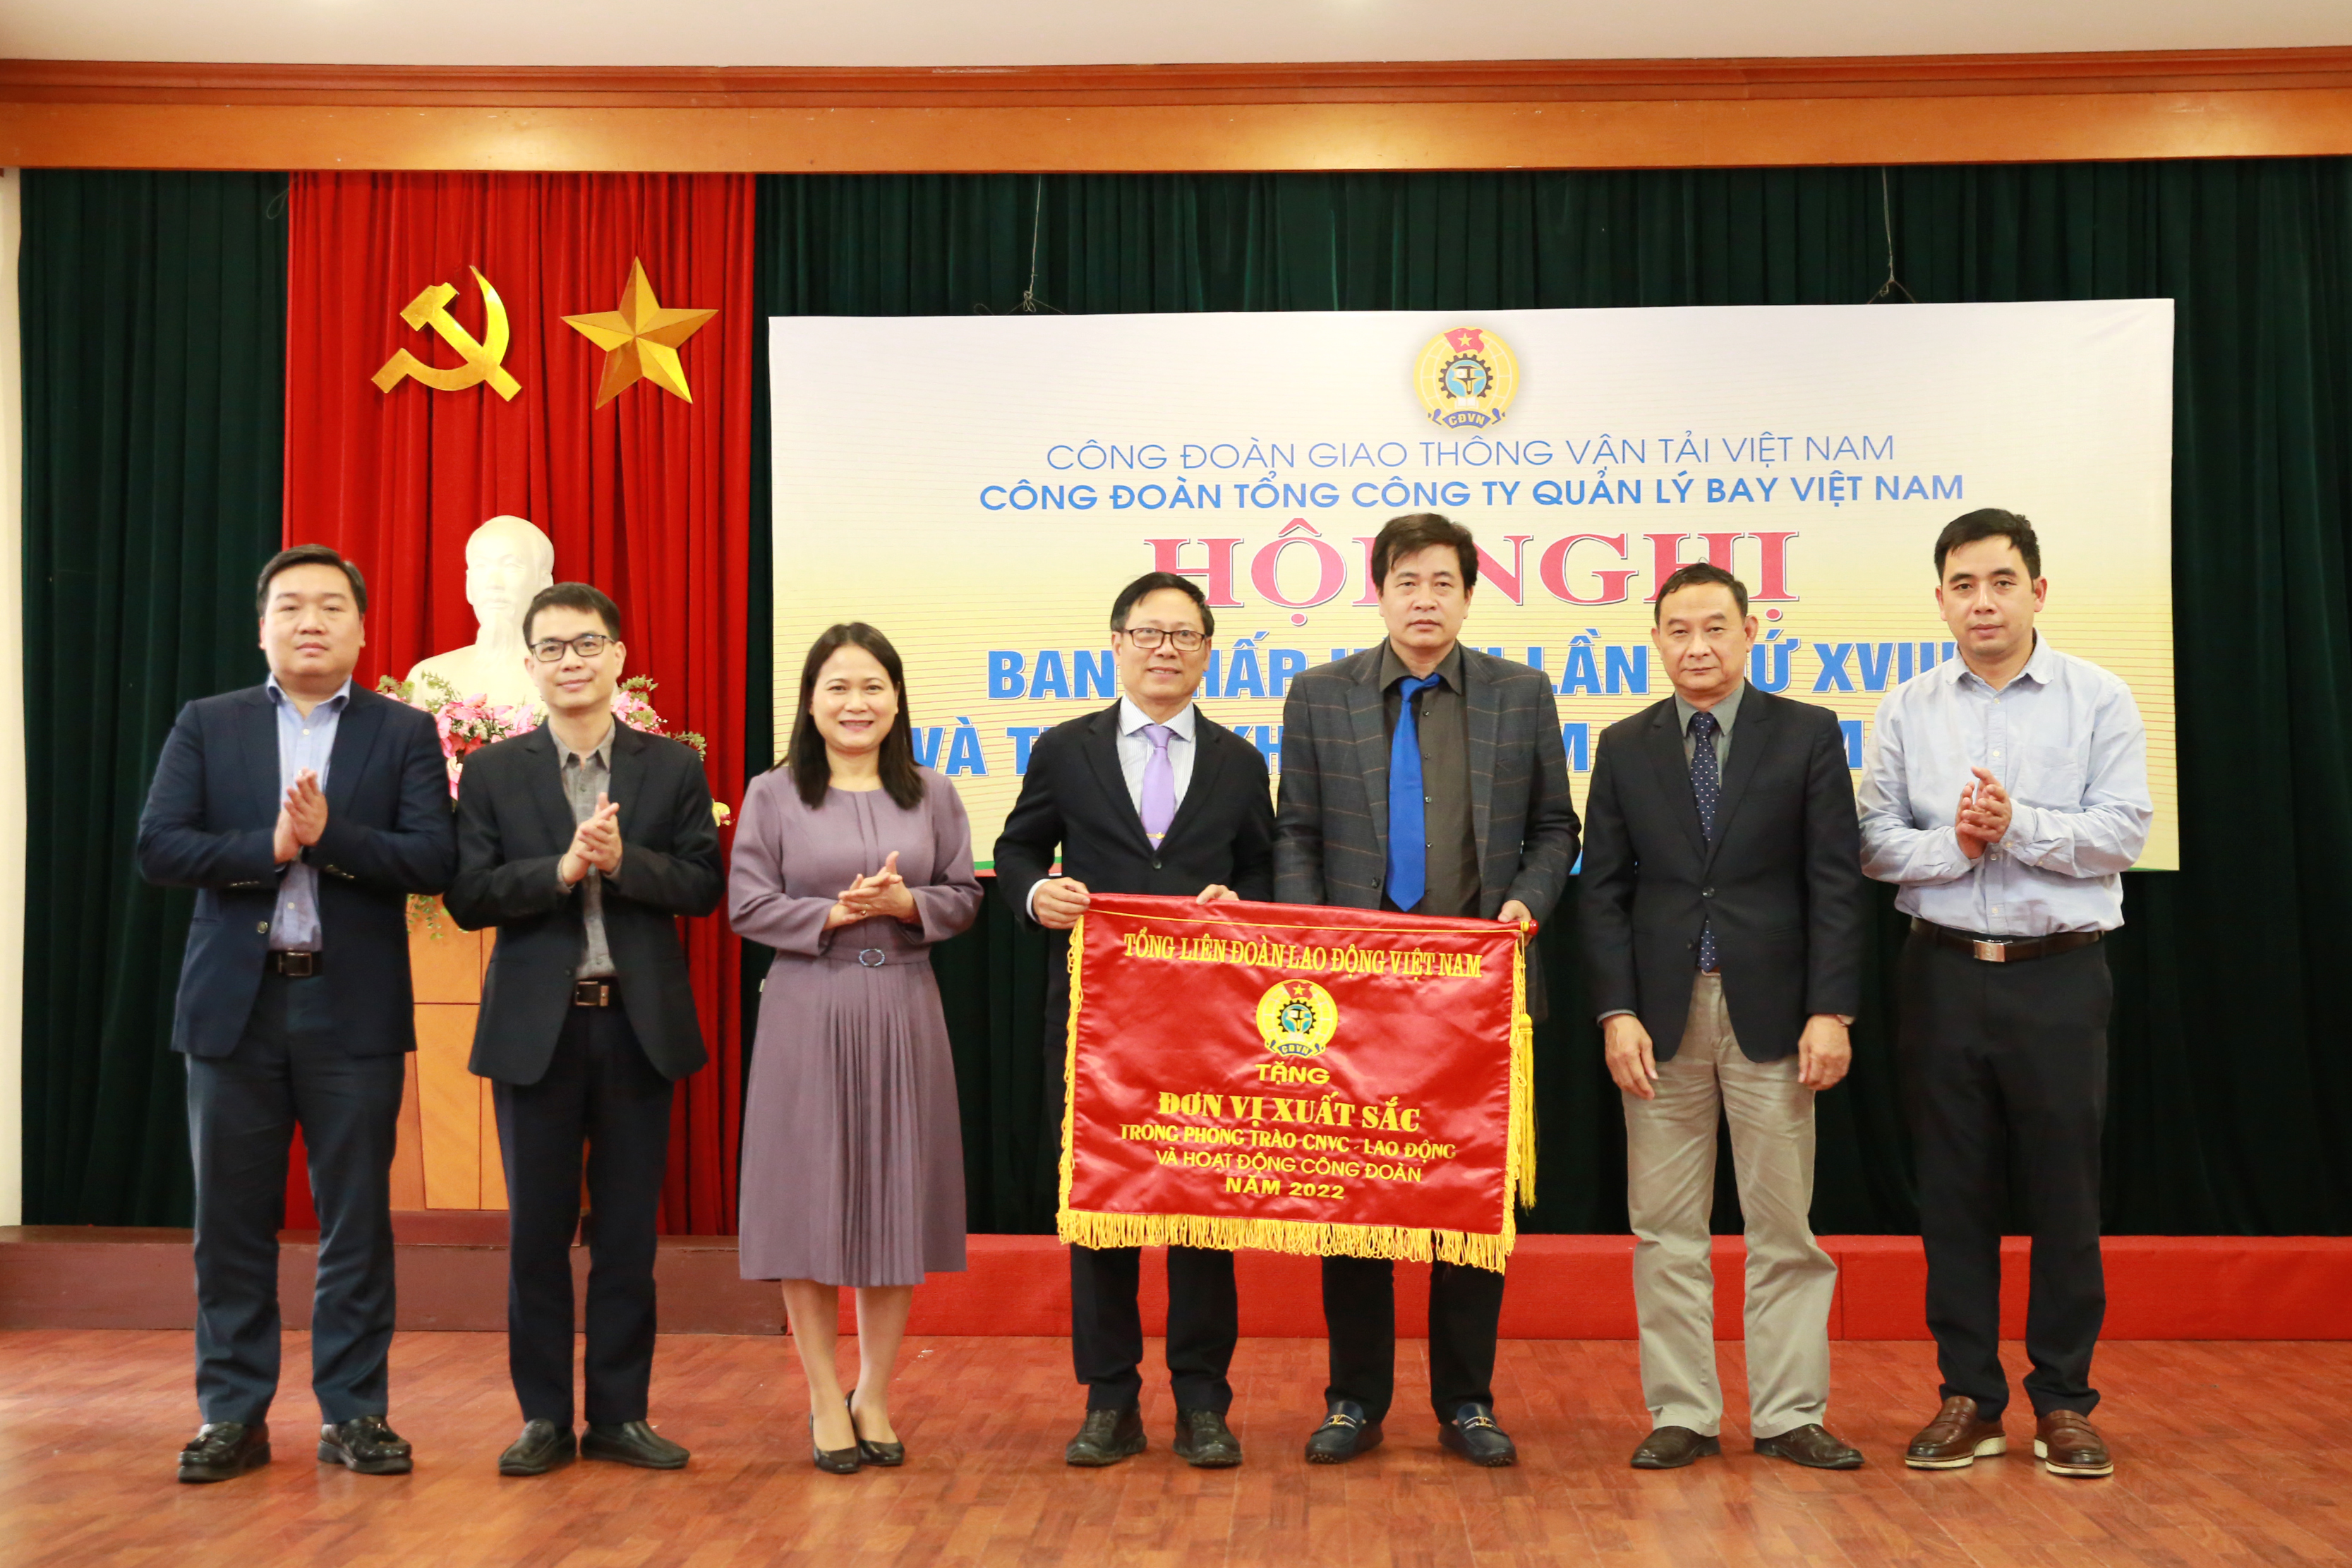 Công đoàn Tổng công ty Quản lý bay Việt Nam được Tổng Liên đoàn Lao động Việt Nam tặng cờ thi đua Đơn vị xuất sắc năm 2022